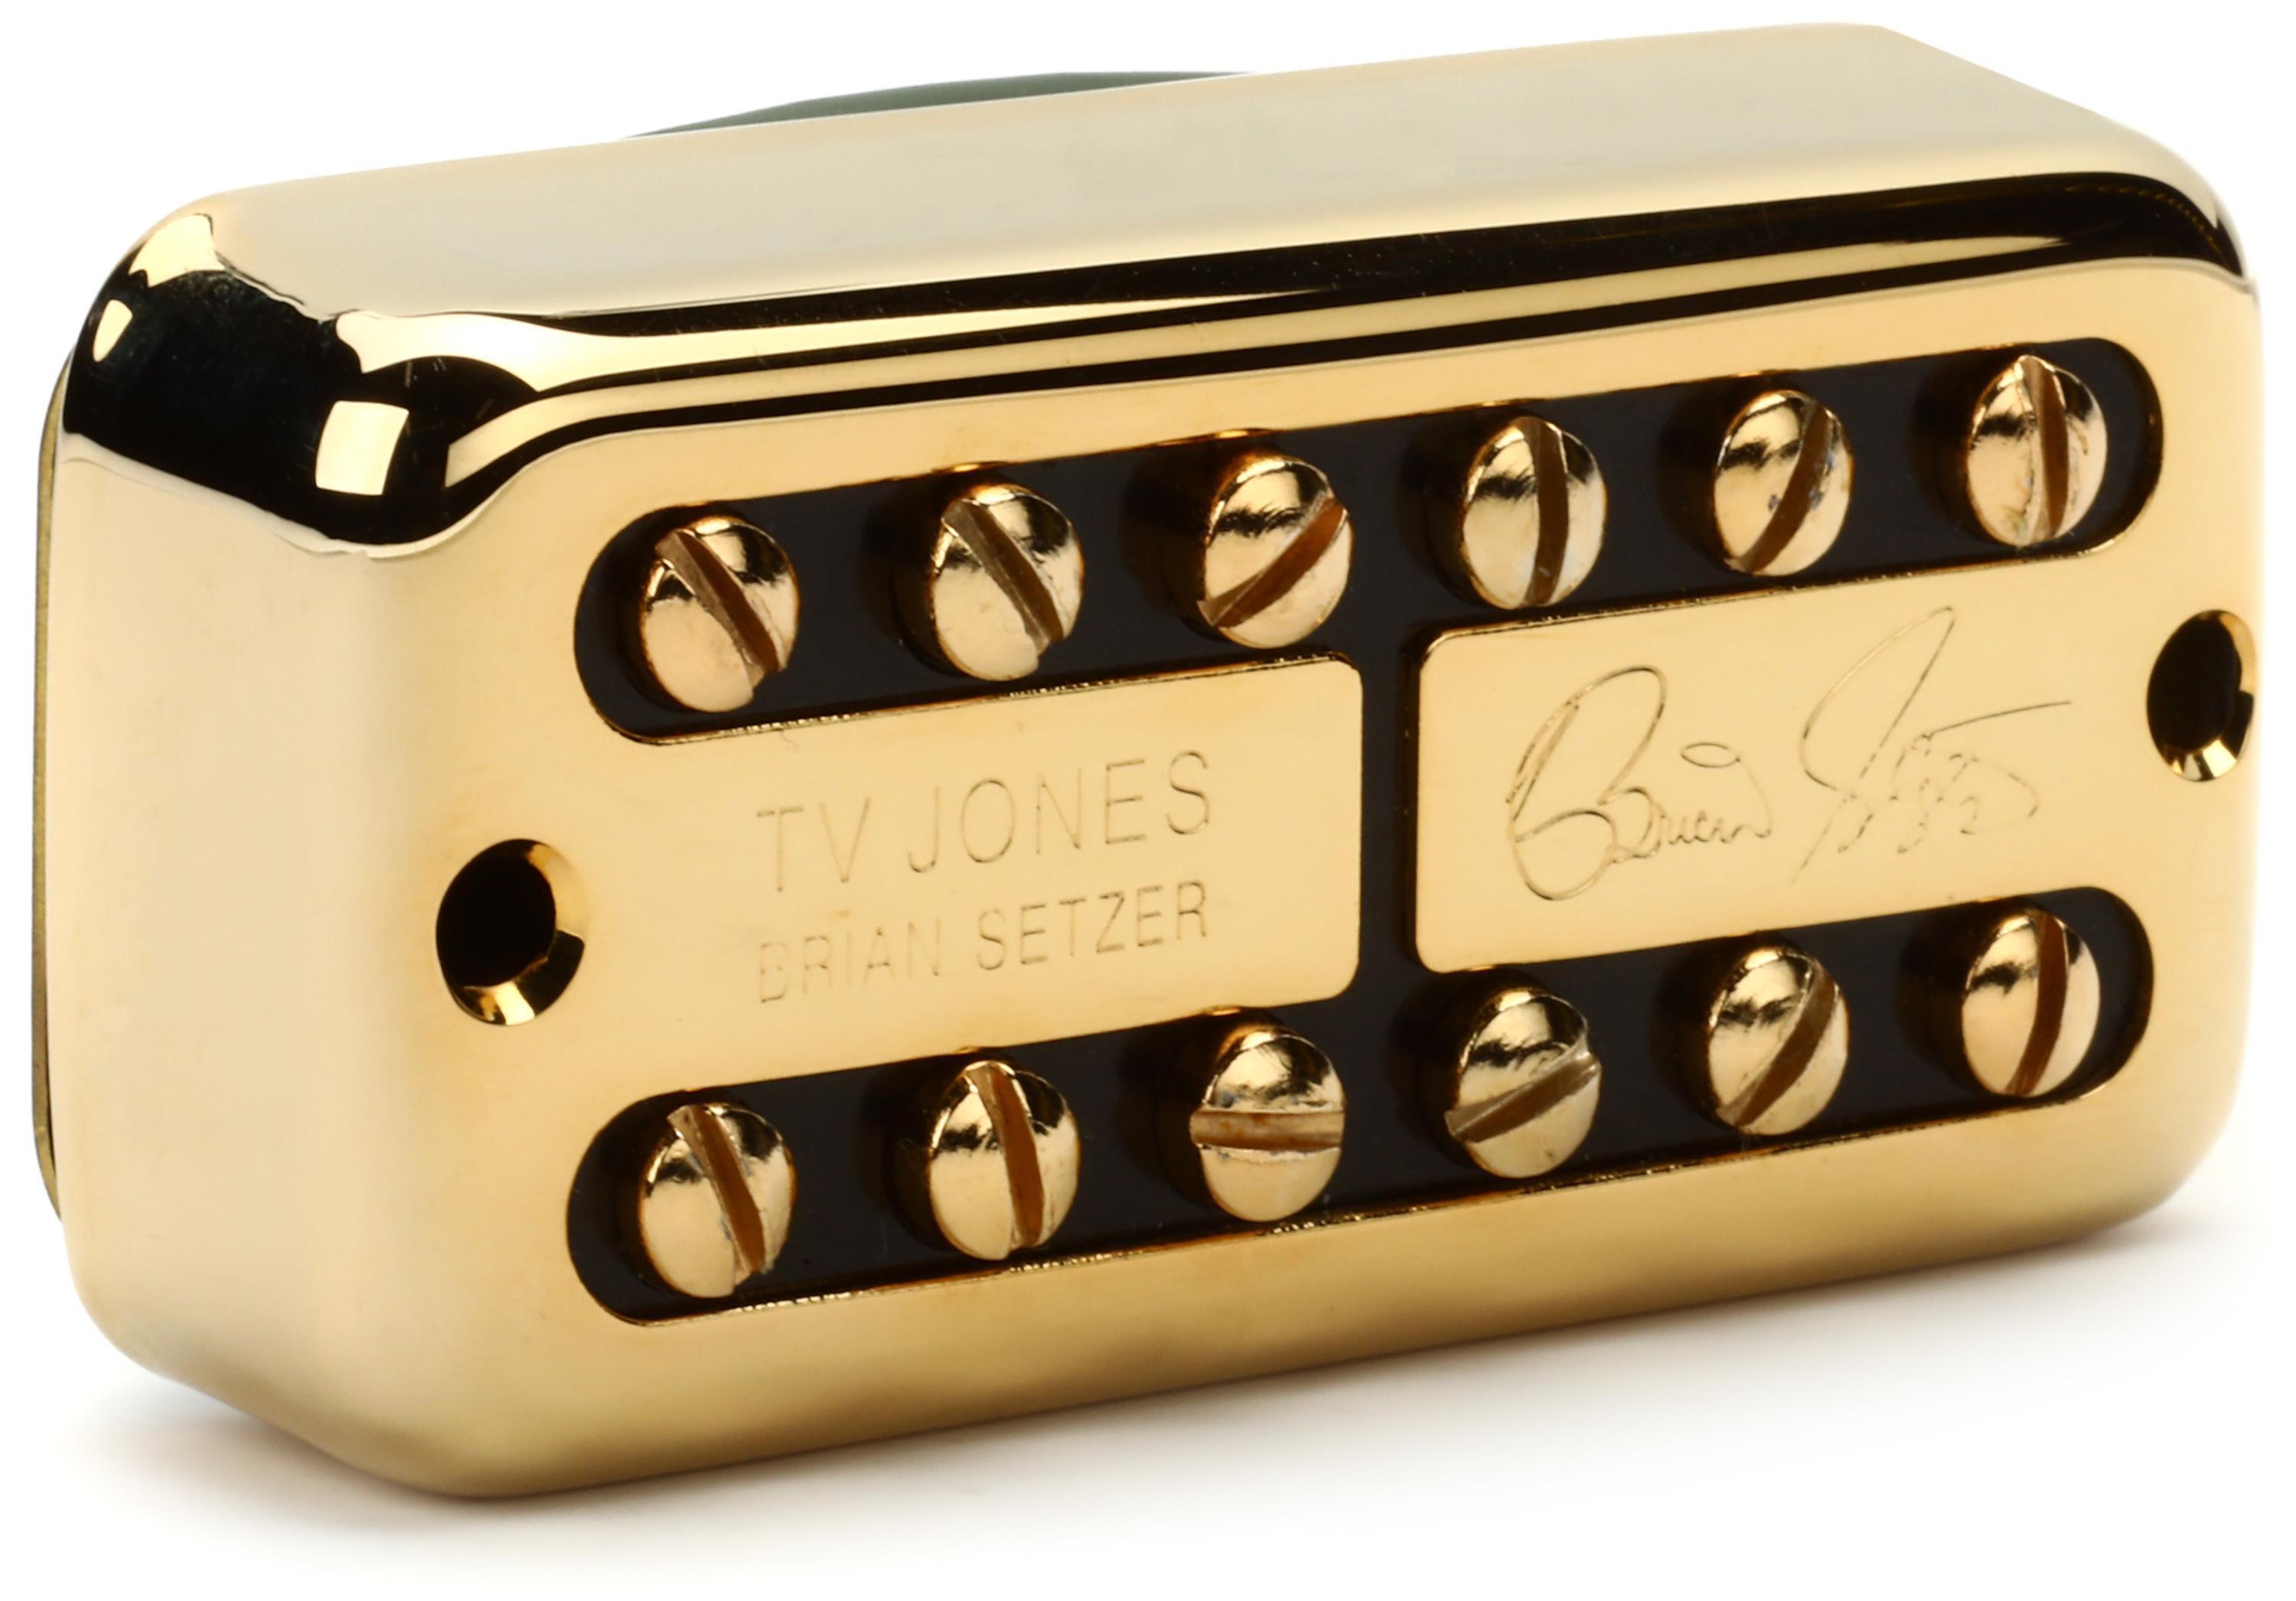 TV Jones Brian Setzer Neck Signature Humbucker Pickup - Gold